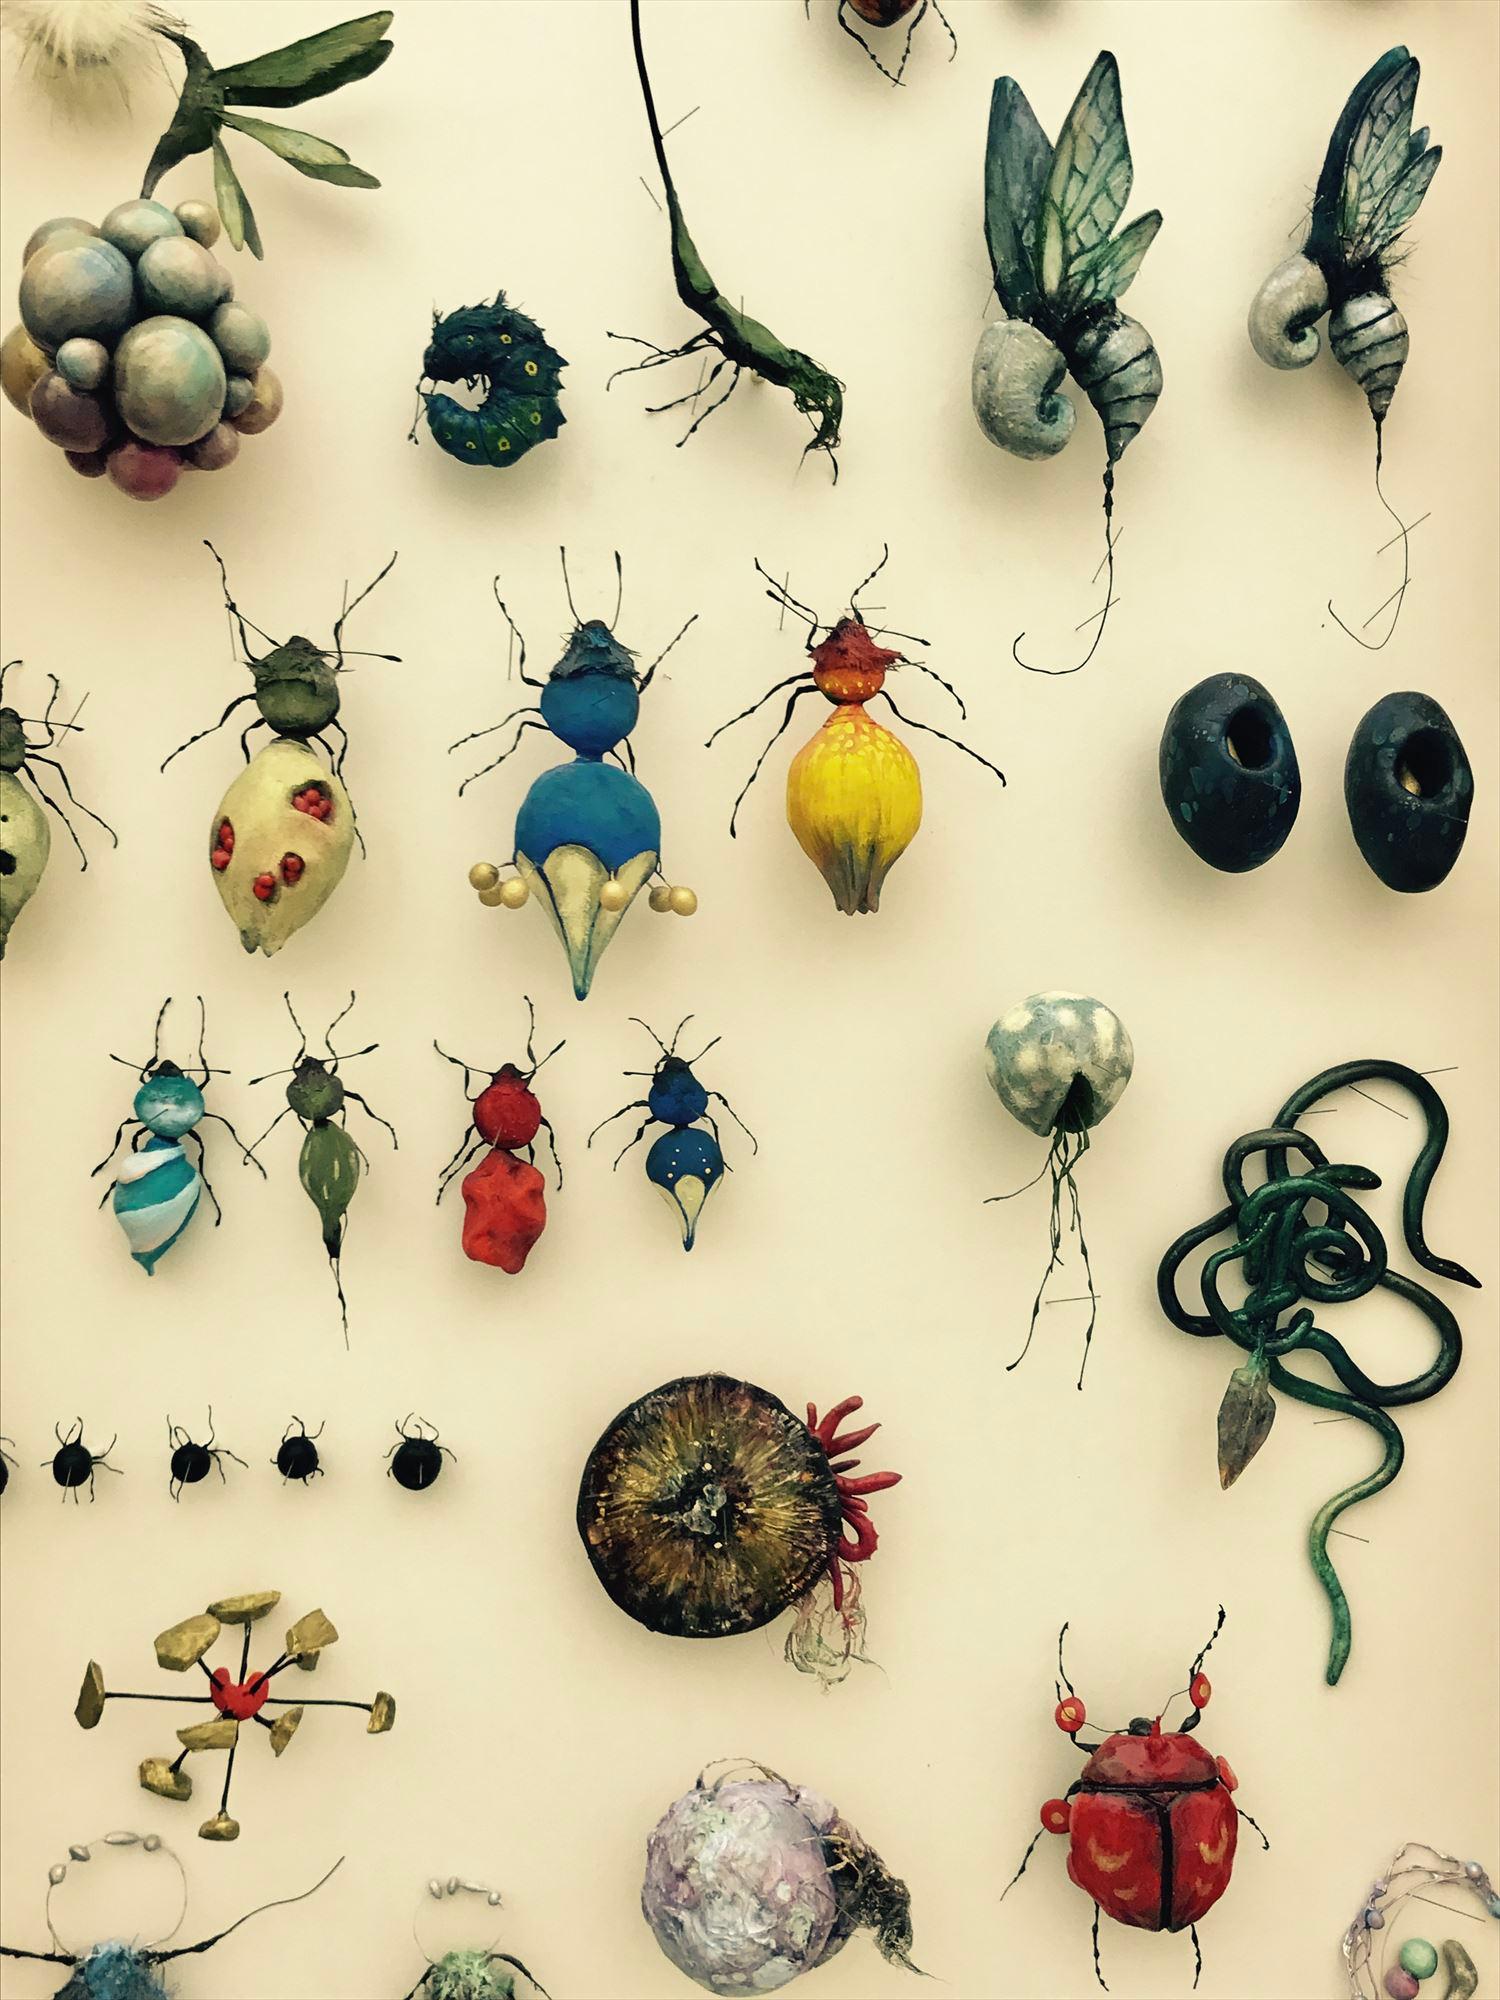 嫉妬や弱虫が虫になったら……？金沢21世紀美術館で、ファンタジックな昆虫採集。アペルト07「川越ゆりえ　弱虫標本」